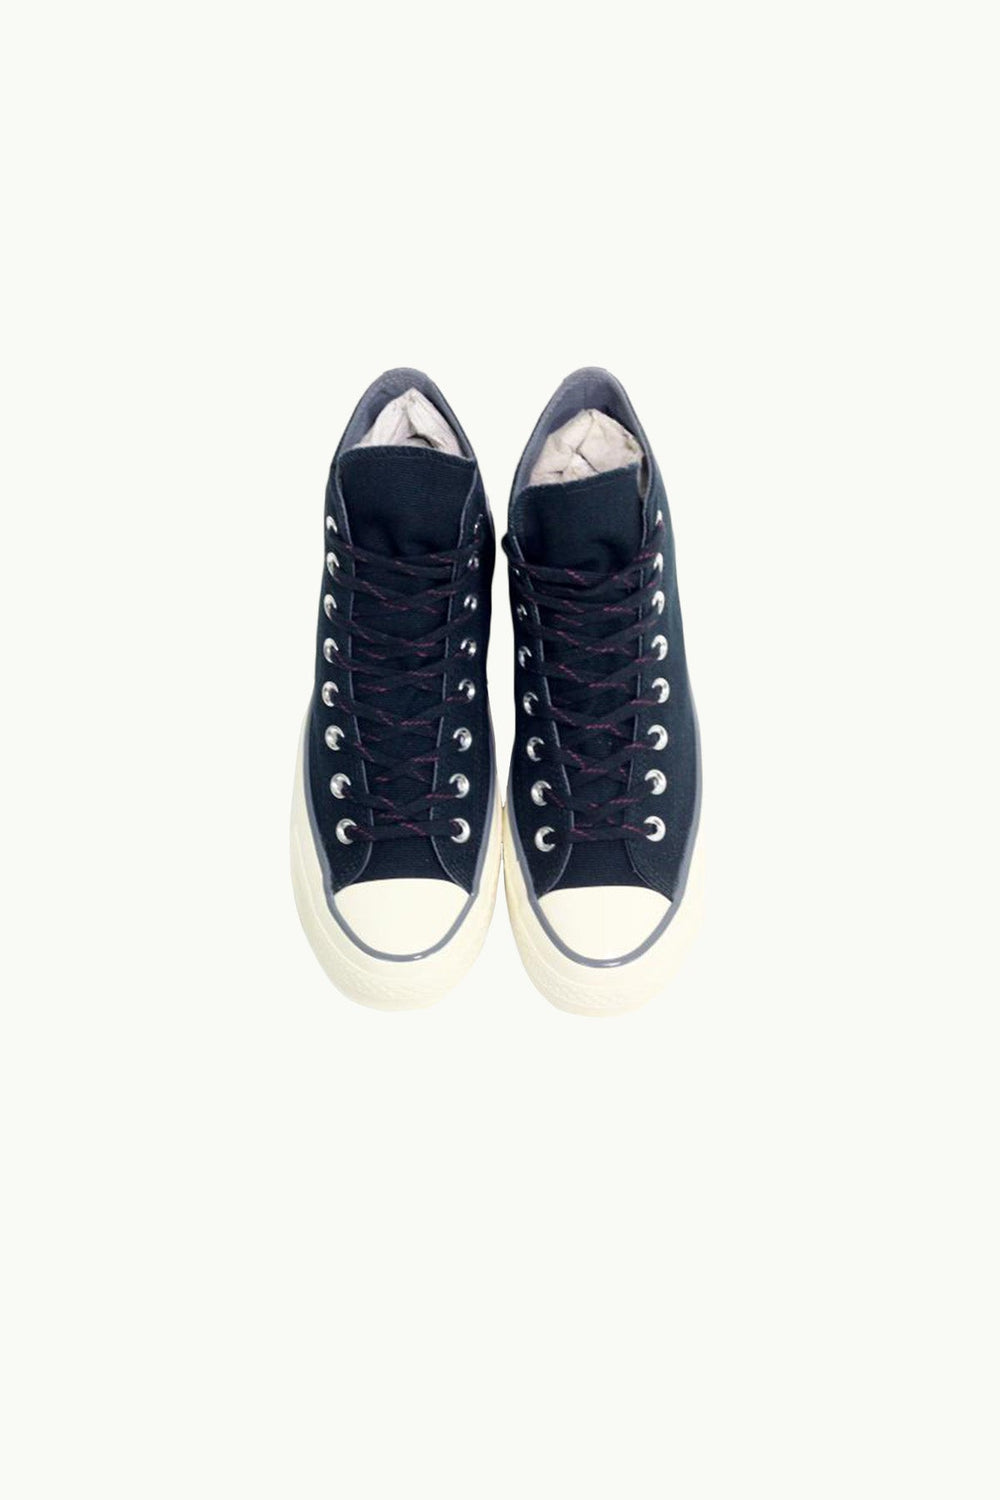 נעלי Chuck 70 בצבע שחור דגרדה הולוגרמה - Converse